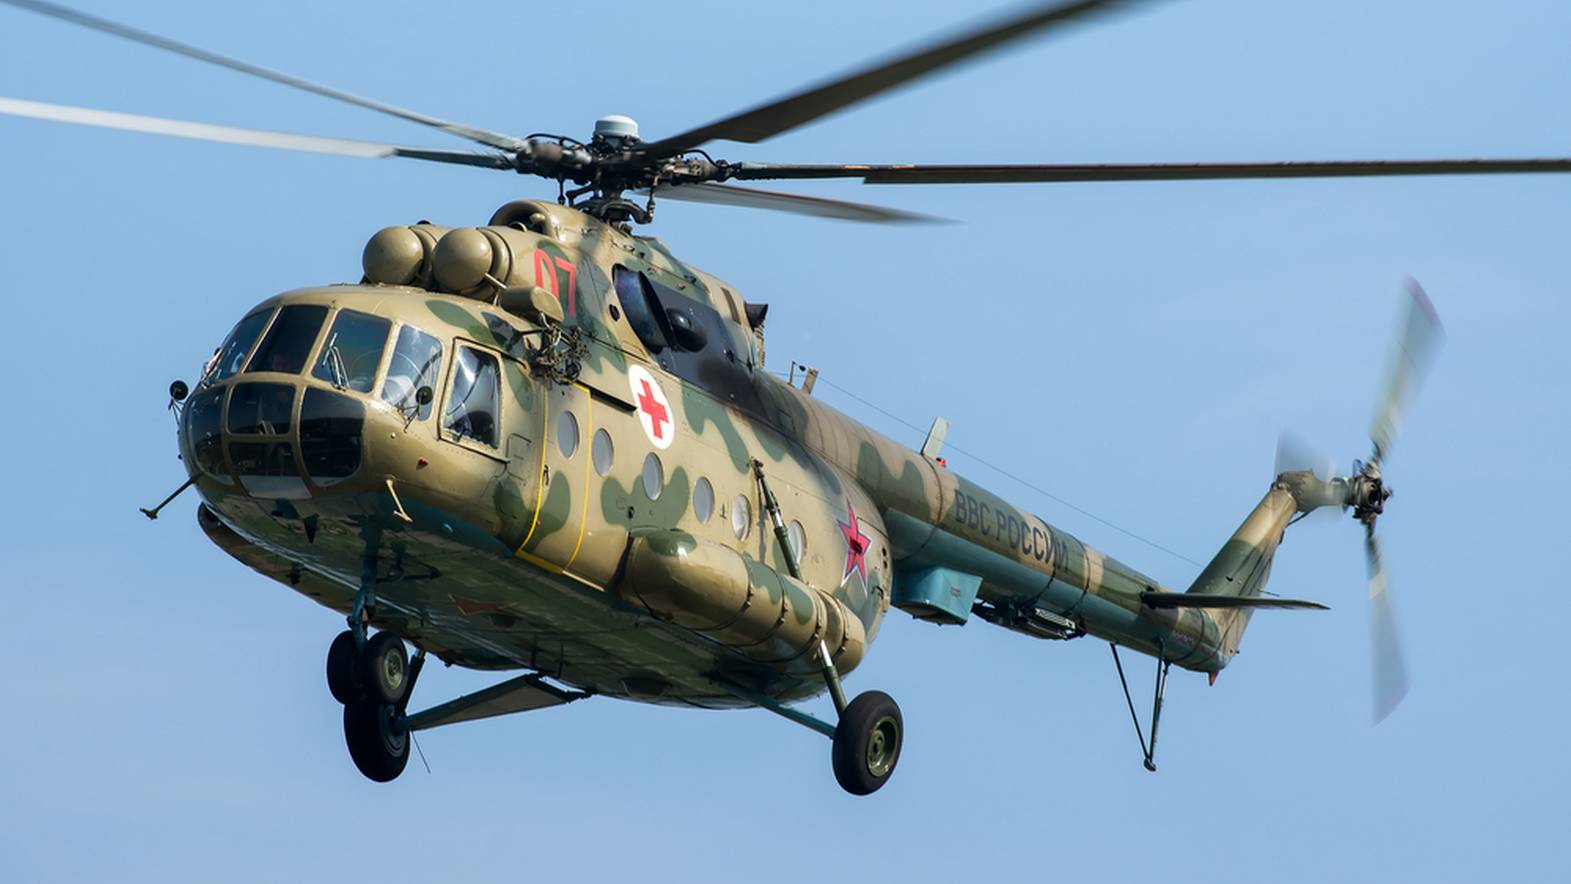 Μόνο στη… Ρωσία: Ελικόπτερο προσγειώνεται  και ο πιλότος ζητά οδηγίες γιατί έχει χαθεί!